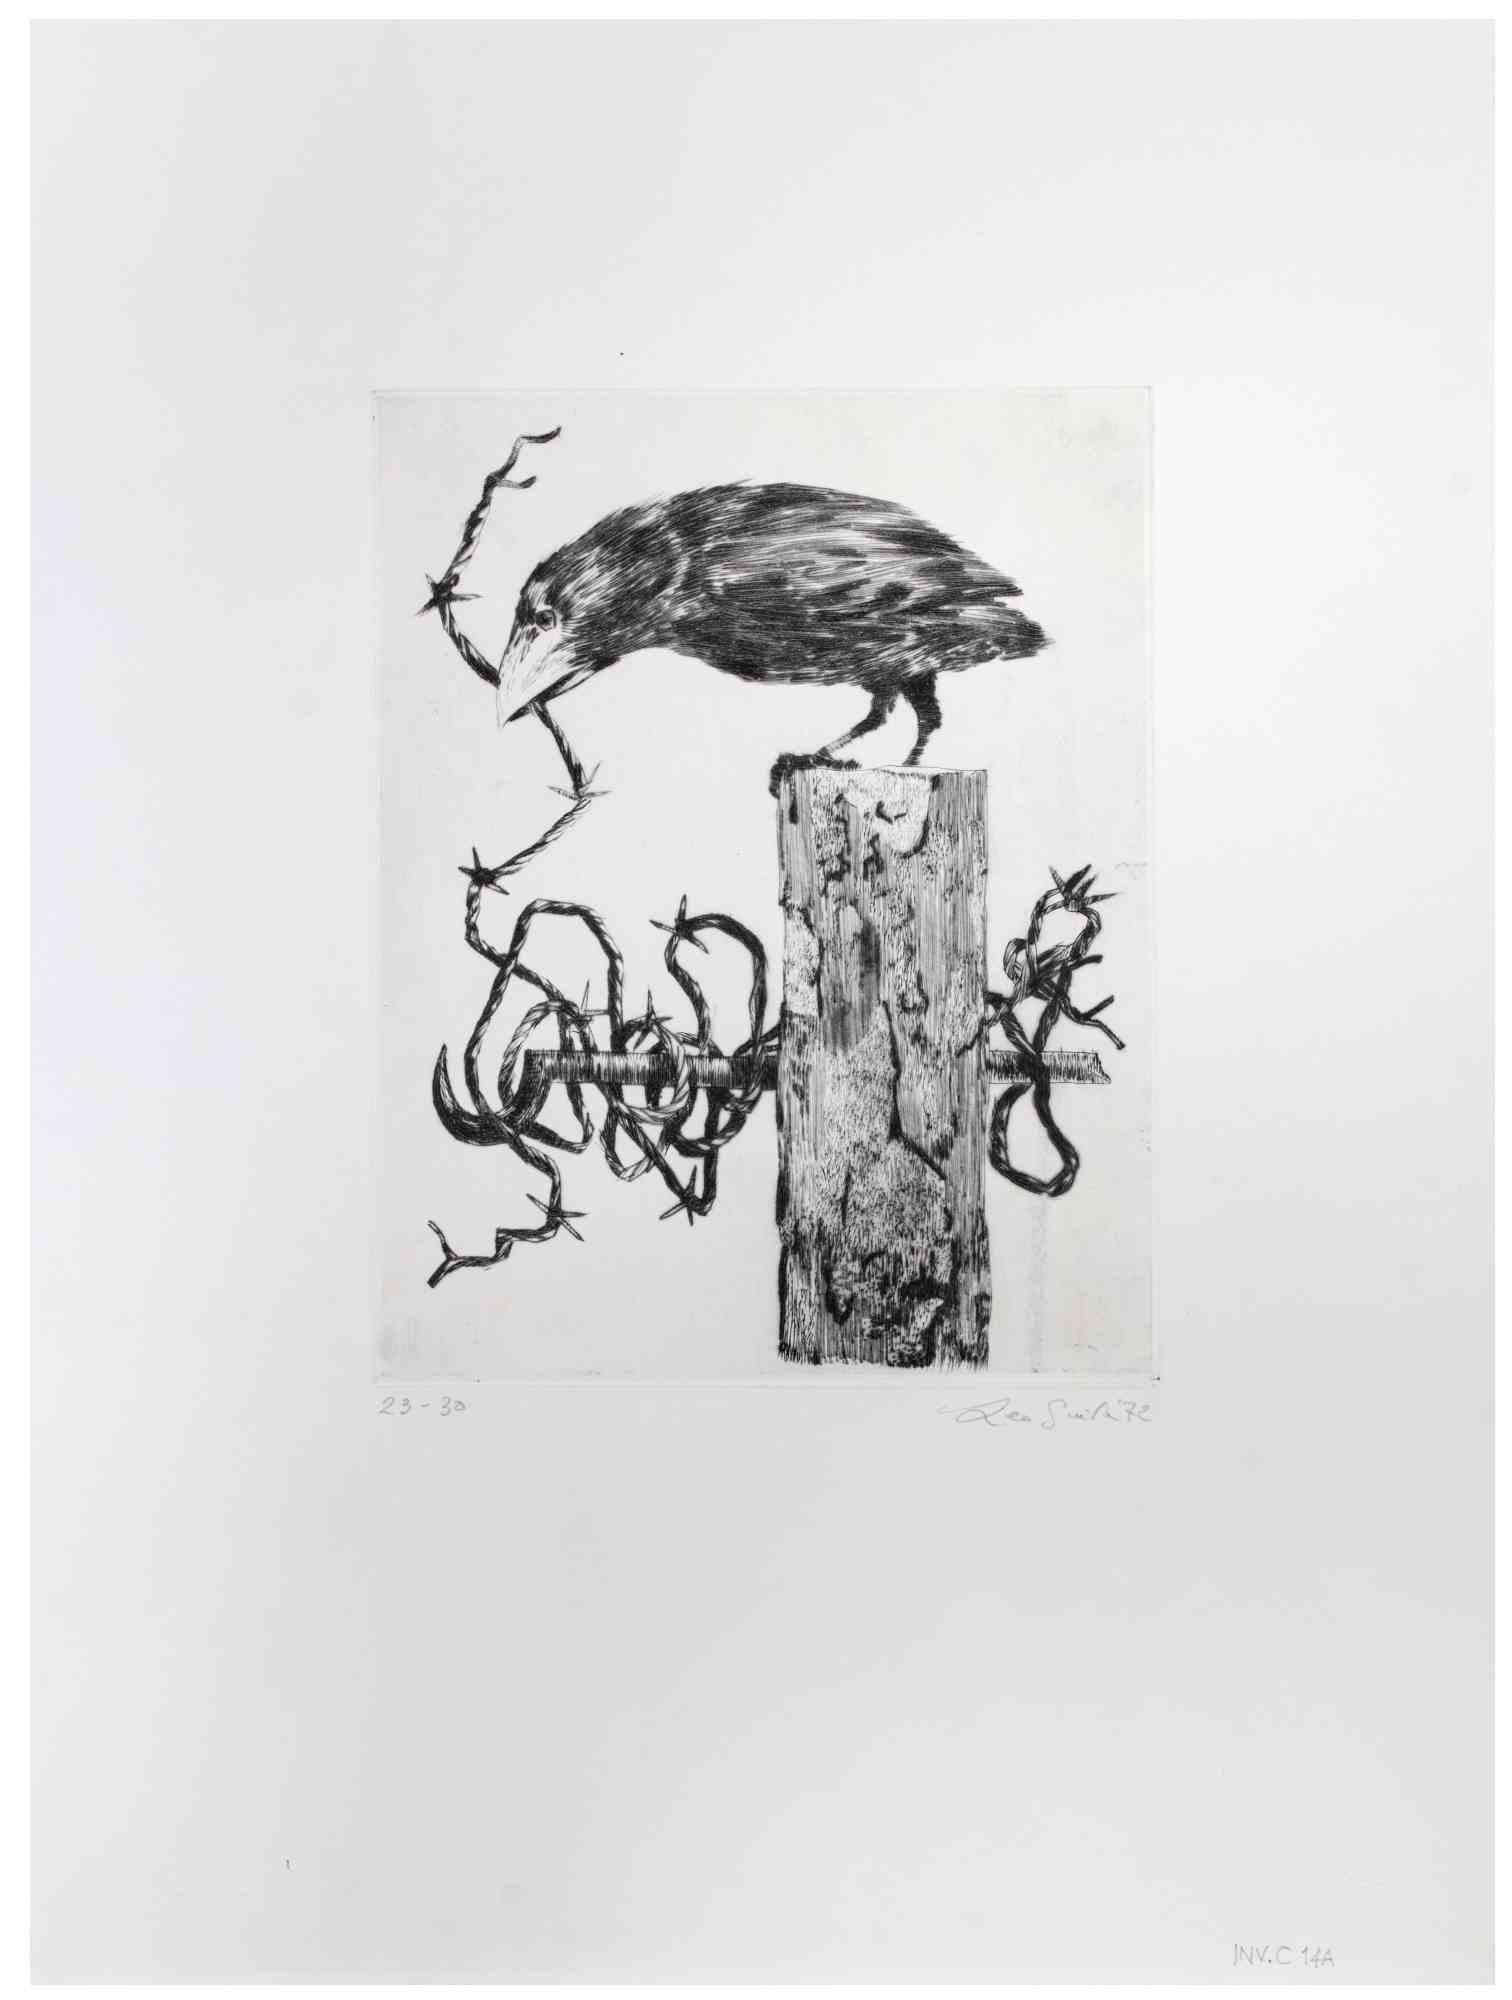 Crow ist ein Kunstwerk des zeitgenössischen italienischen Künstlers Leo Guida (1992 - 2017) aus dem Jahr 1972.

Schwarz-Weiß-Radierung auf Papier.

Handsigniert am unteren rechten Rand, datiert, nummeriert, Auflage: 30 Exemplare.

Sehr guter